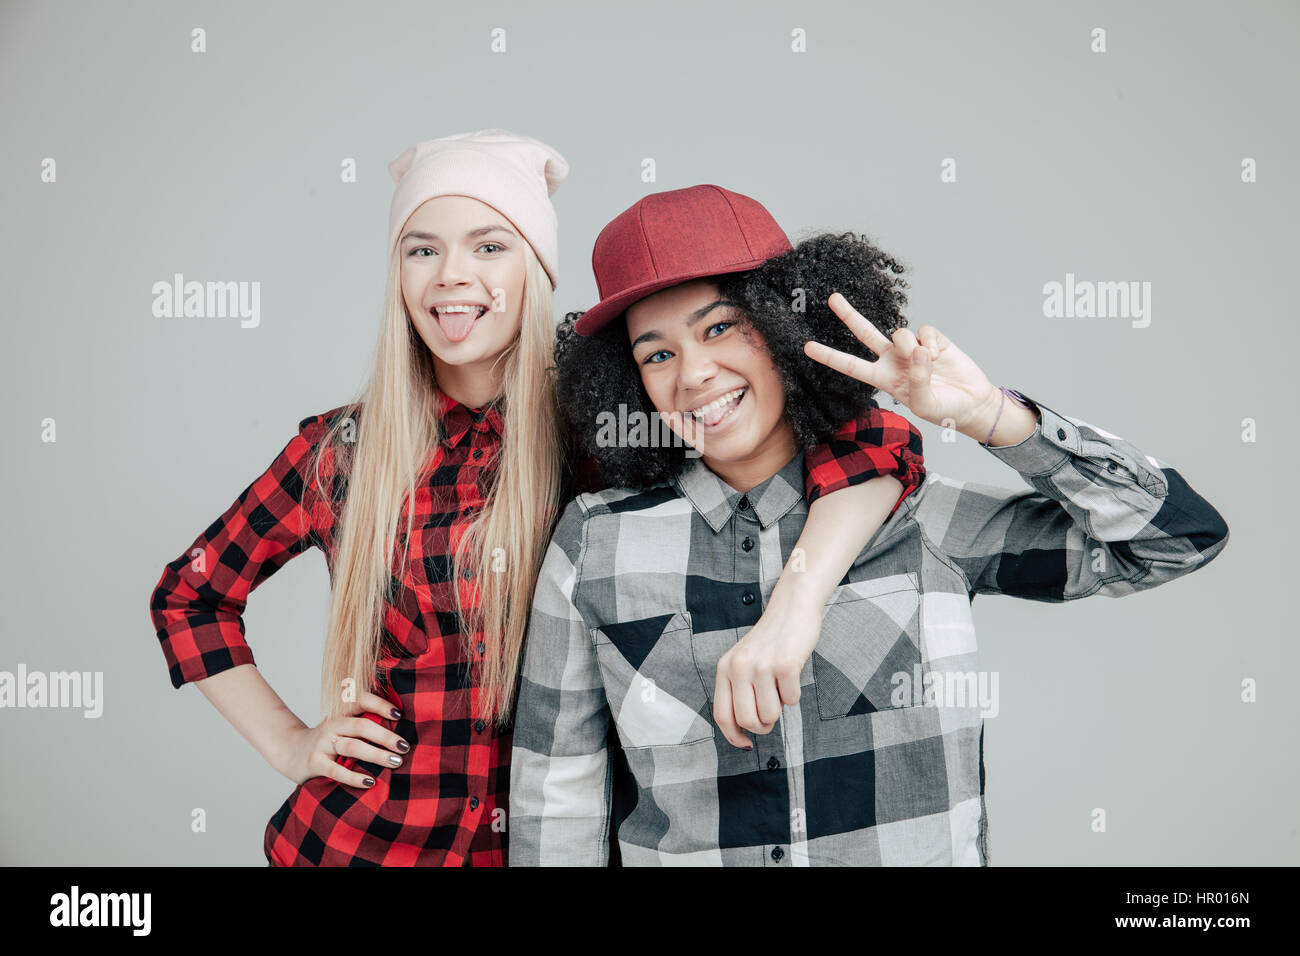 Lebensstil Studioportrait von zwei beste Freunde Hipster-Mädchen tragen stilvolle helle Outfits, verrückt und tolle Zeit zusammen. Isoliert auf wh Stockfoto